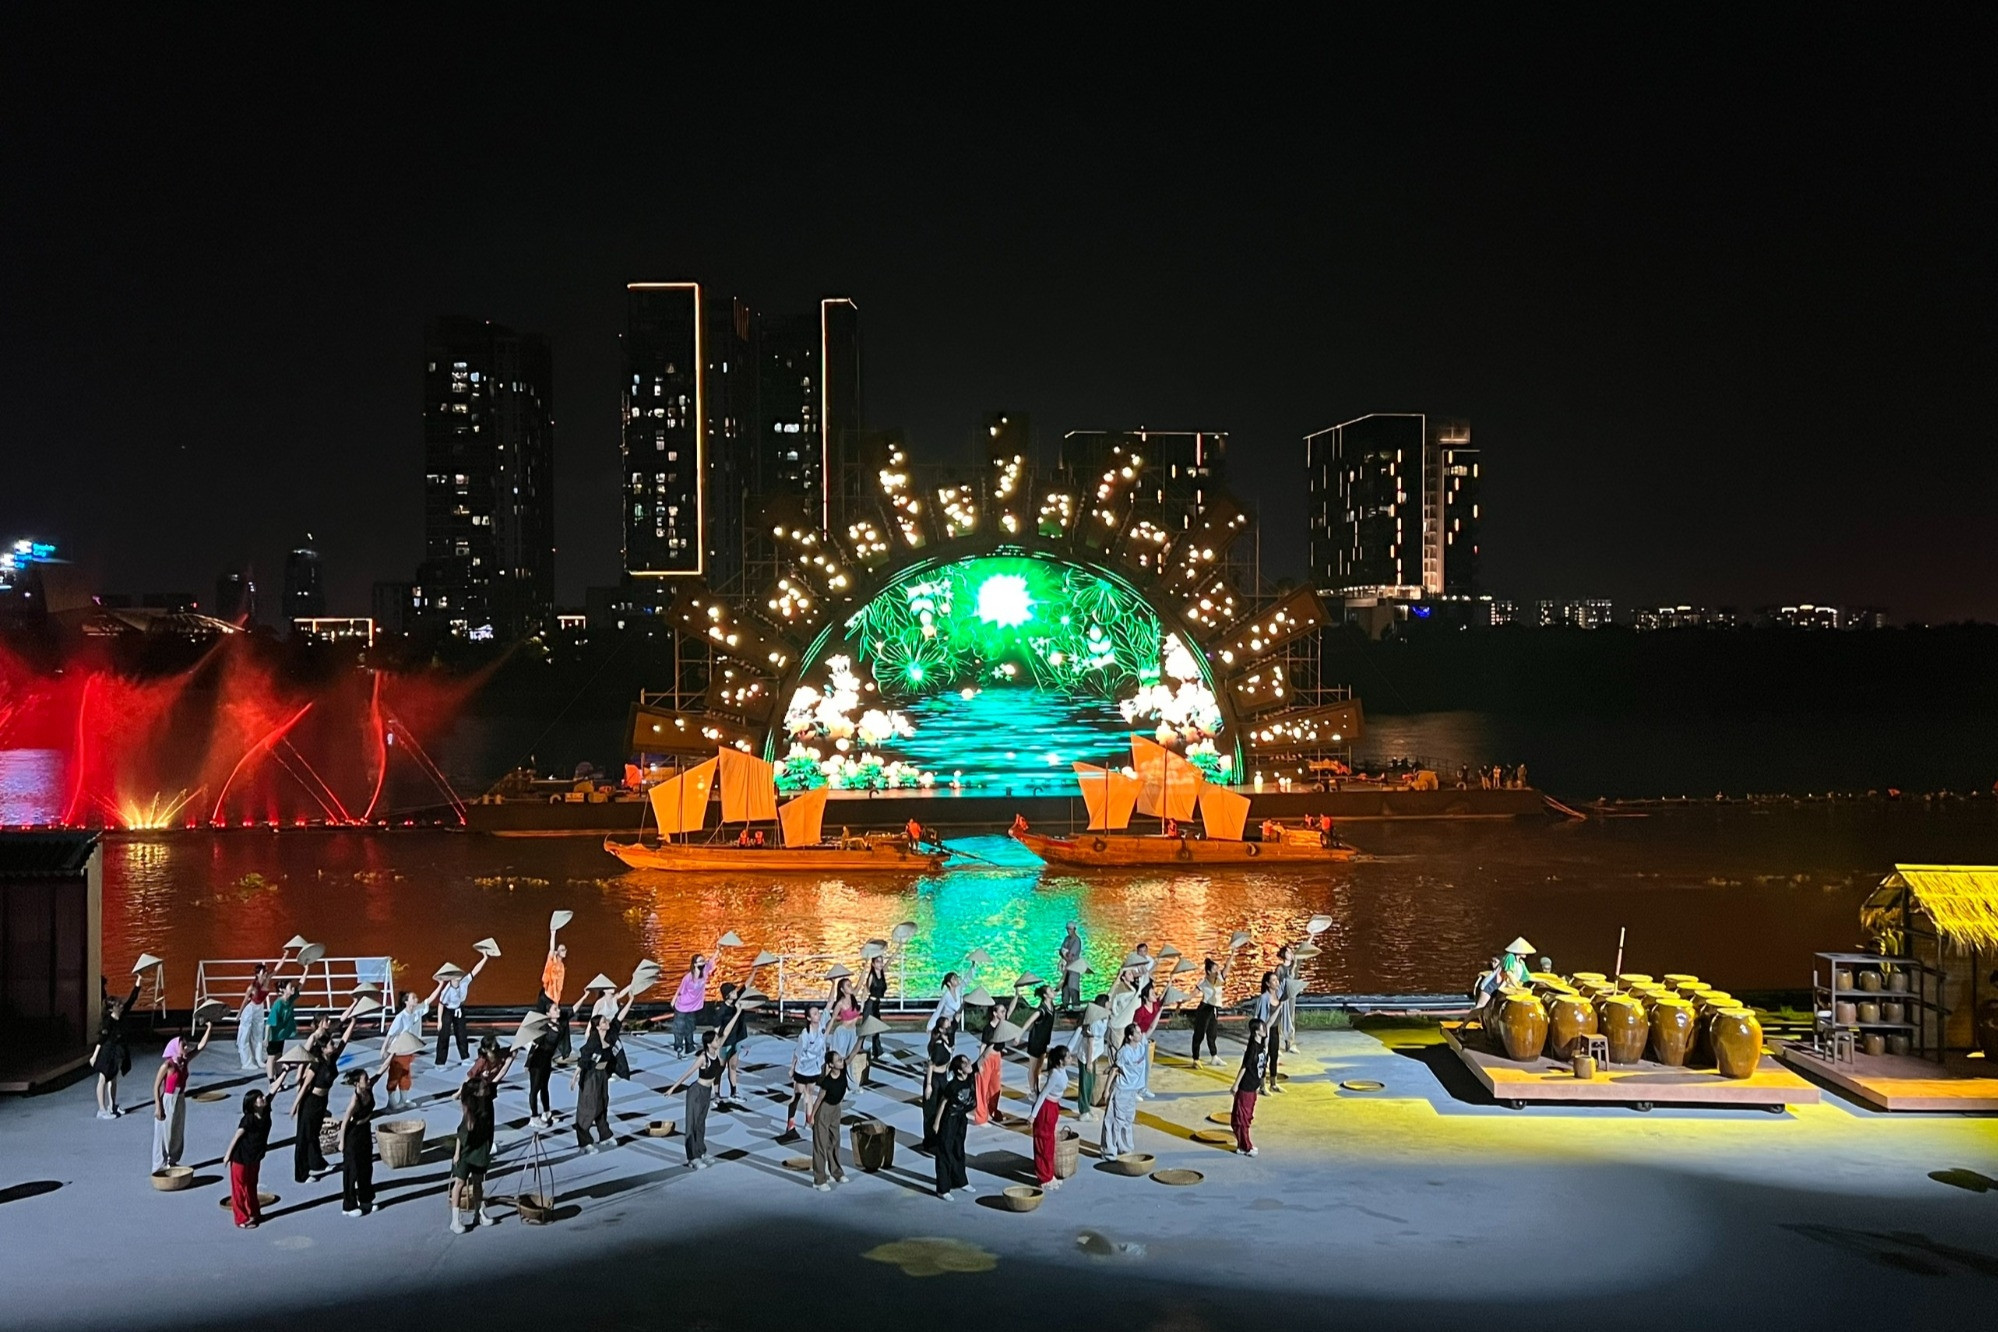 Sân khấu dài 140m được dựng trên sông Sài Gòn